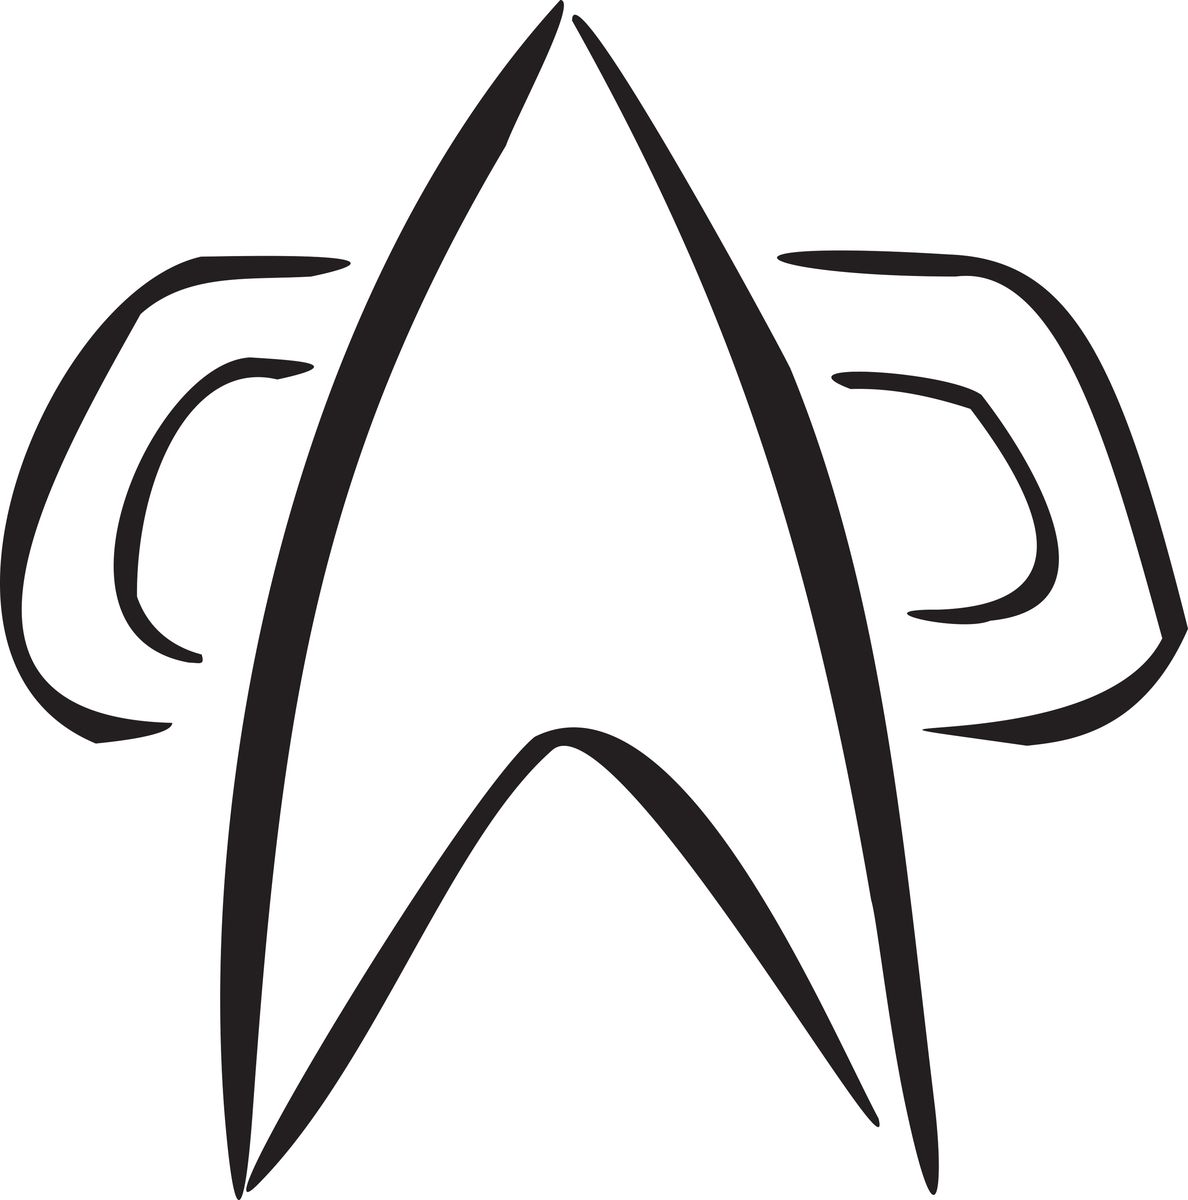 #Kurzgedanken: “Star Trek: Picard” Staffel 3 – Na endlich!